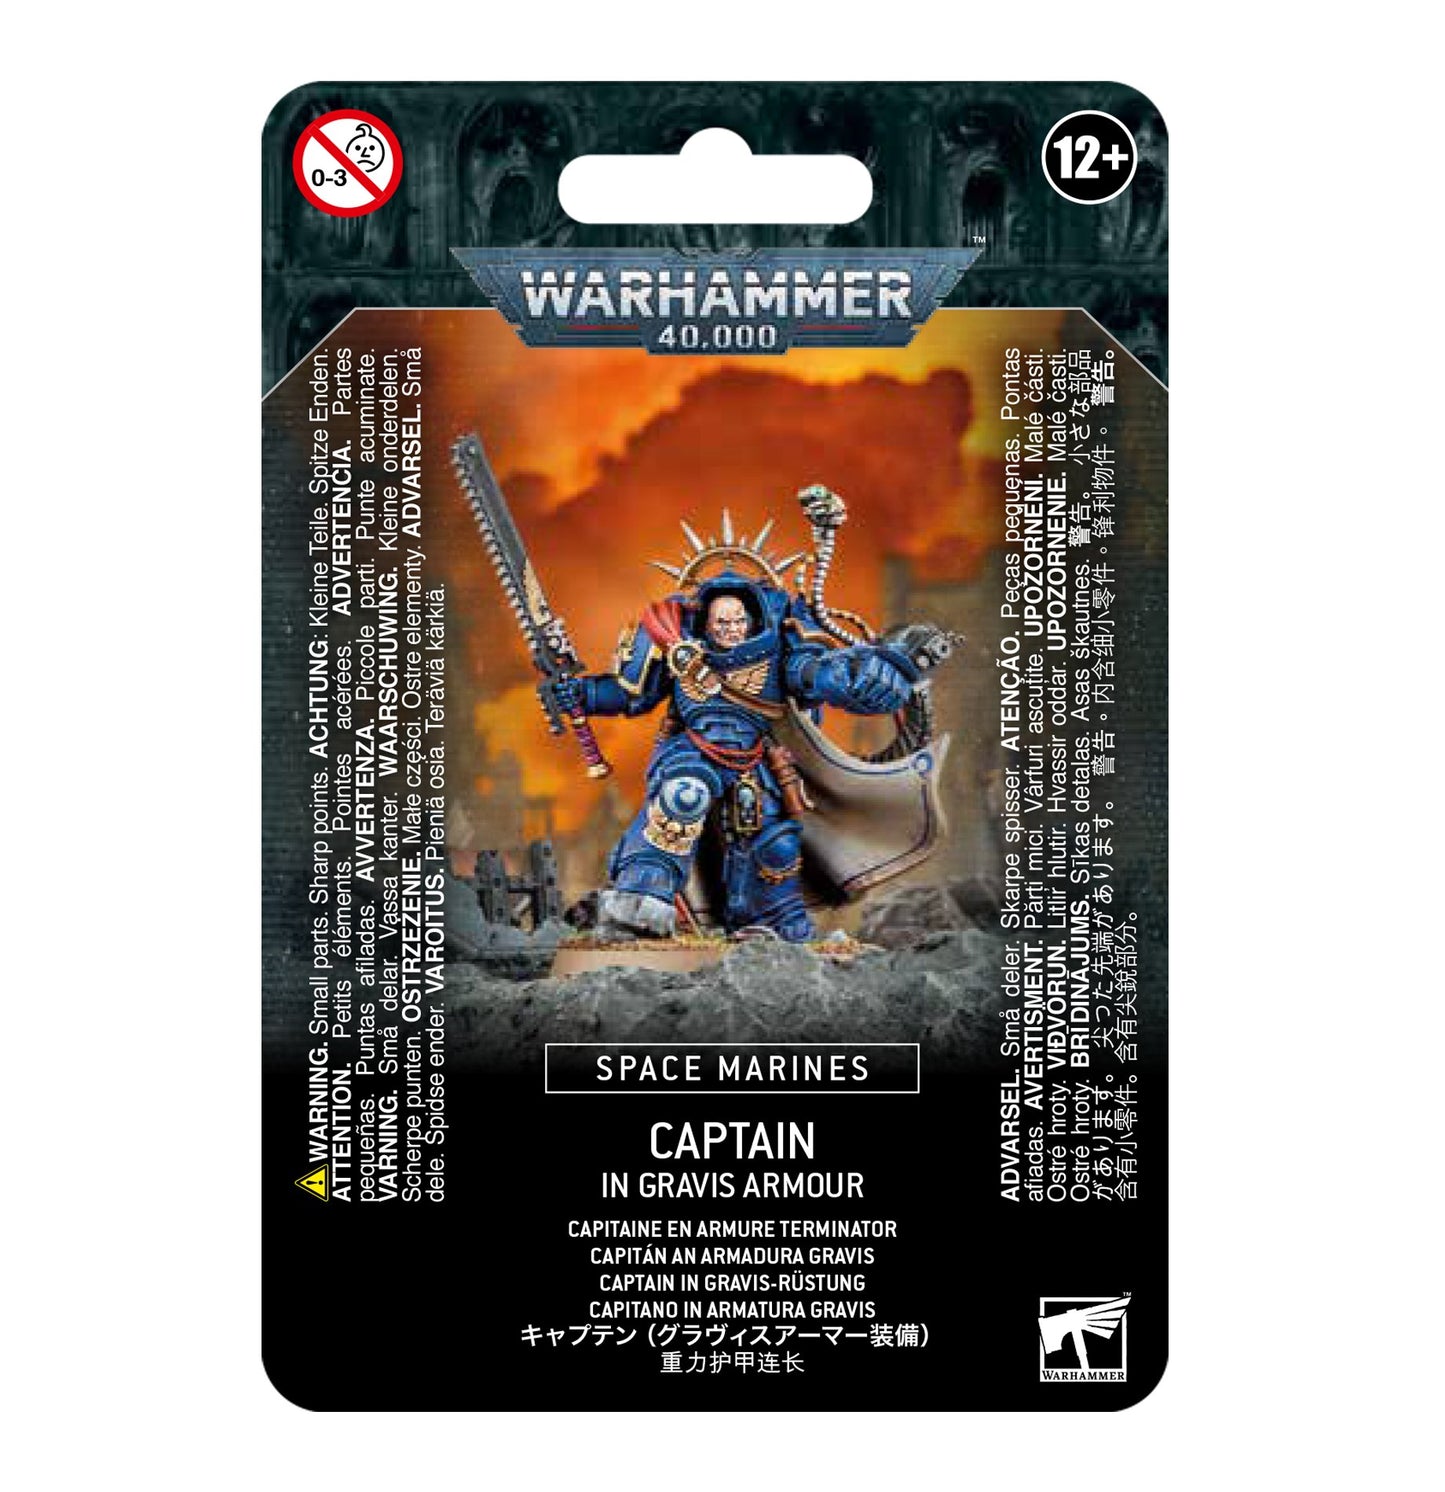 Warhammer 40000: Space Marine Captain in Gravis Armor